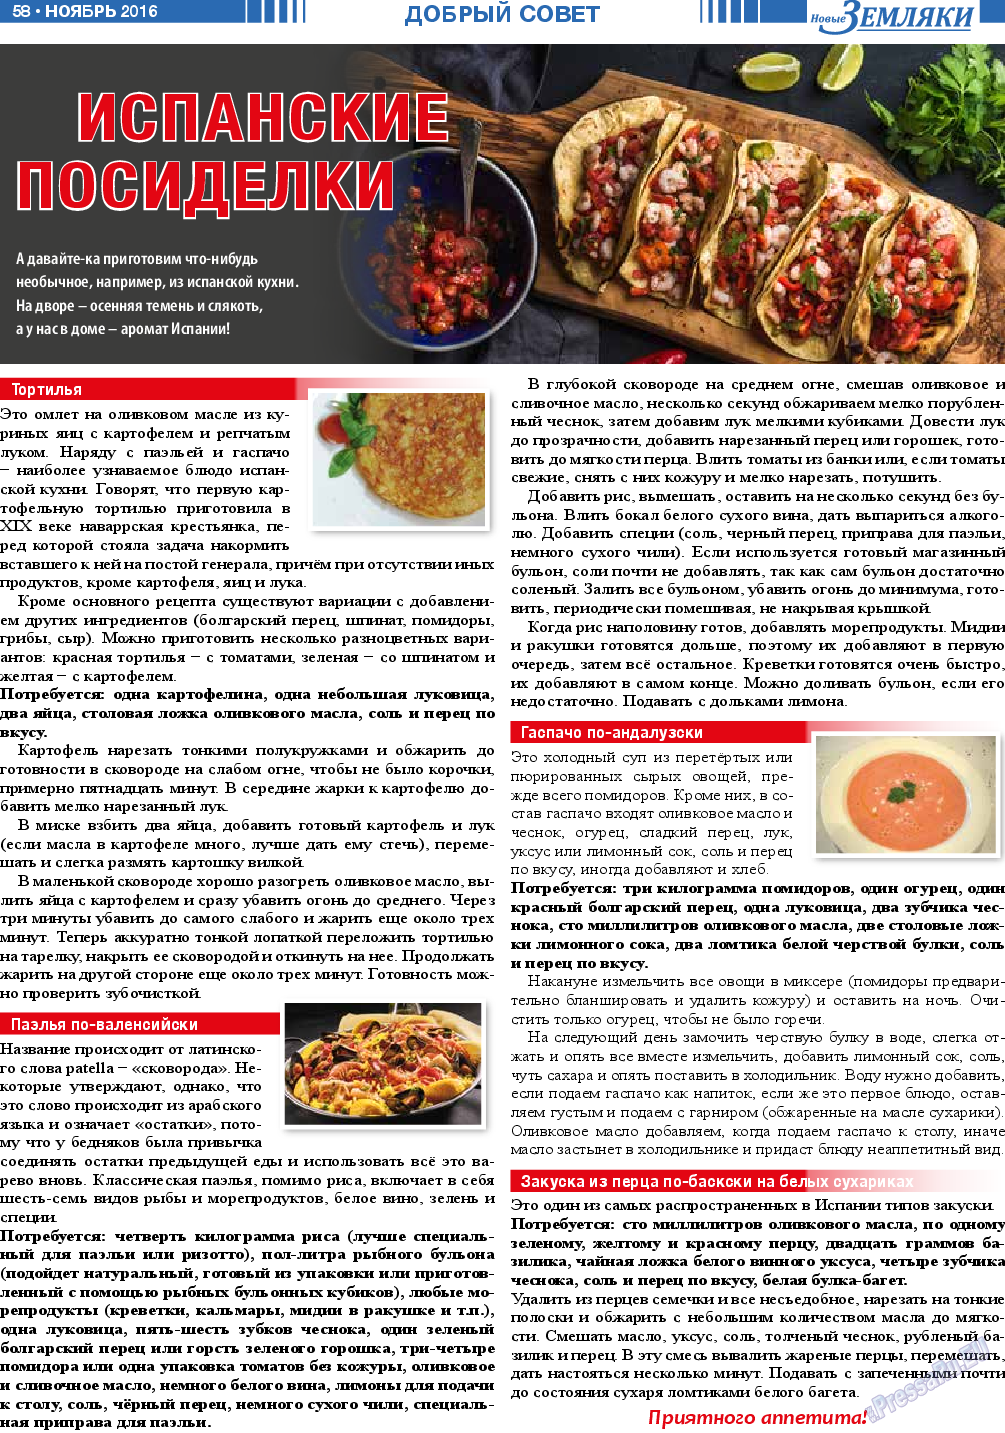 Новые Земляки, газета. 2016 №11 стр.58